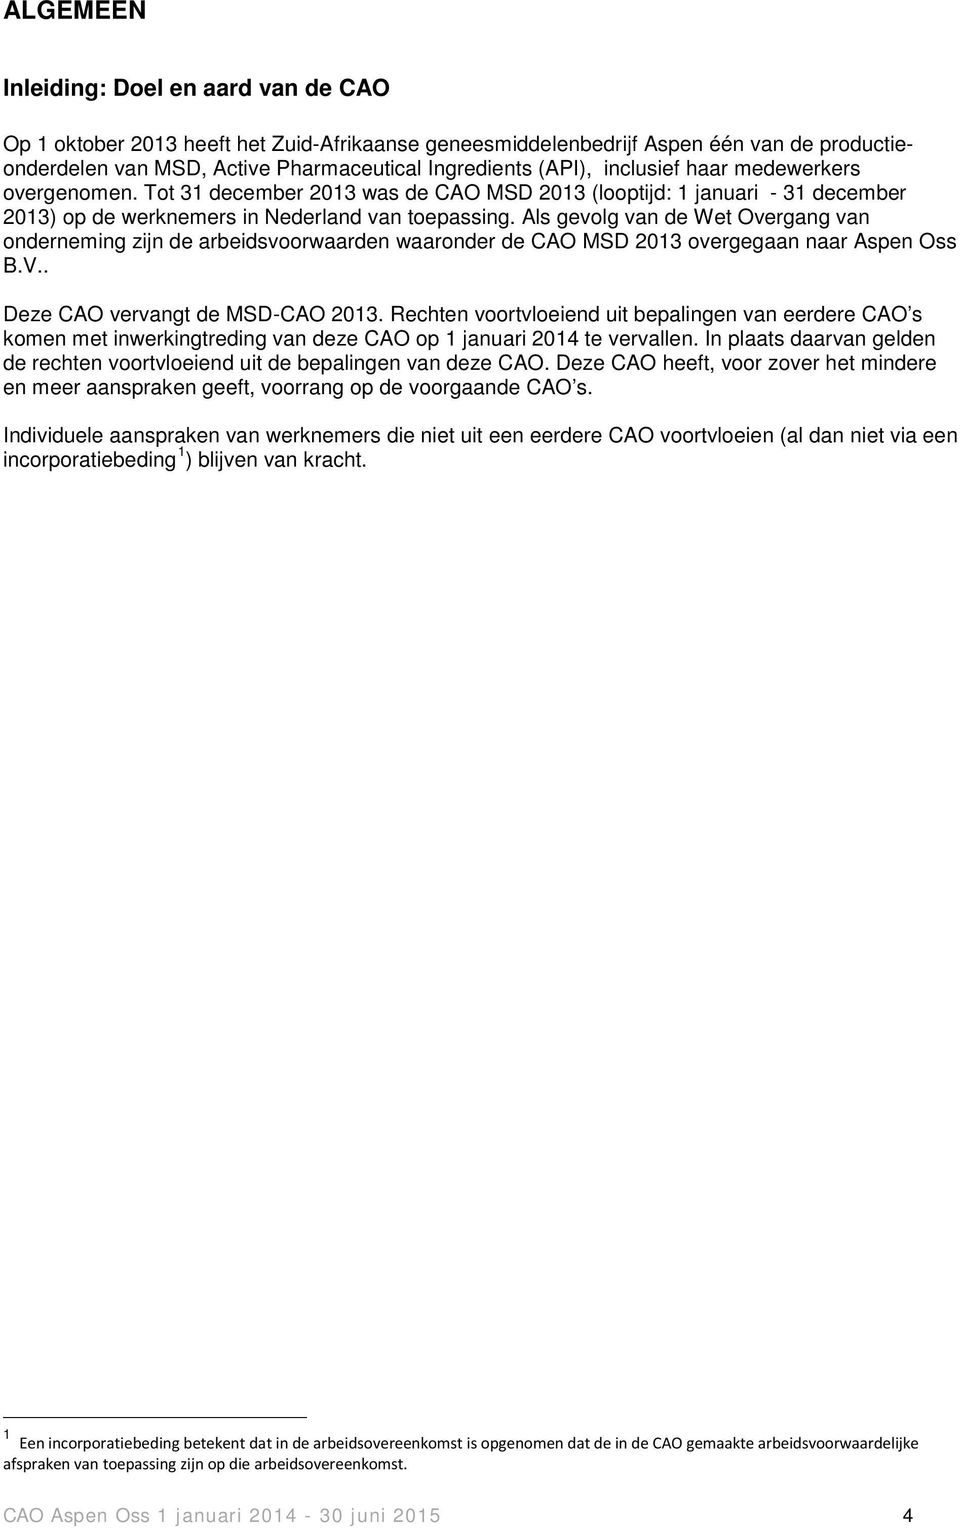 Als gevolg van de Wet Overgang van onderneming zijn de arbeidsvoorwaarden waaronder de CAO MSD 2013 overgegaan naar Aspen Oss B.V.. Deze CAO vervangt de MSD-CAO 2013.